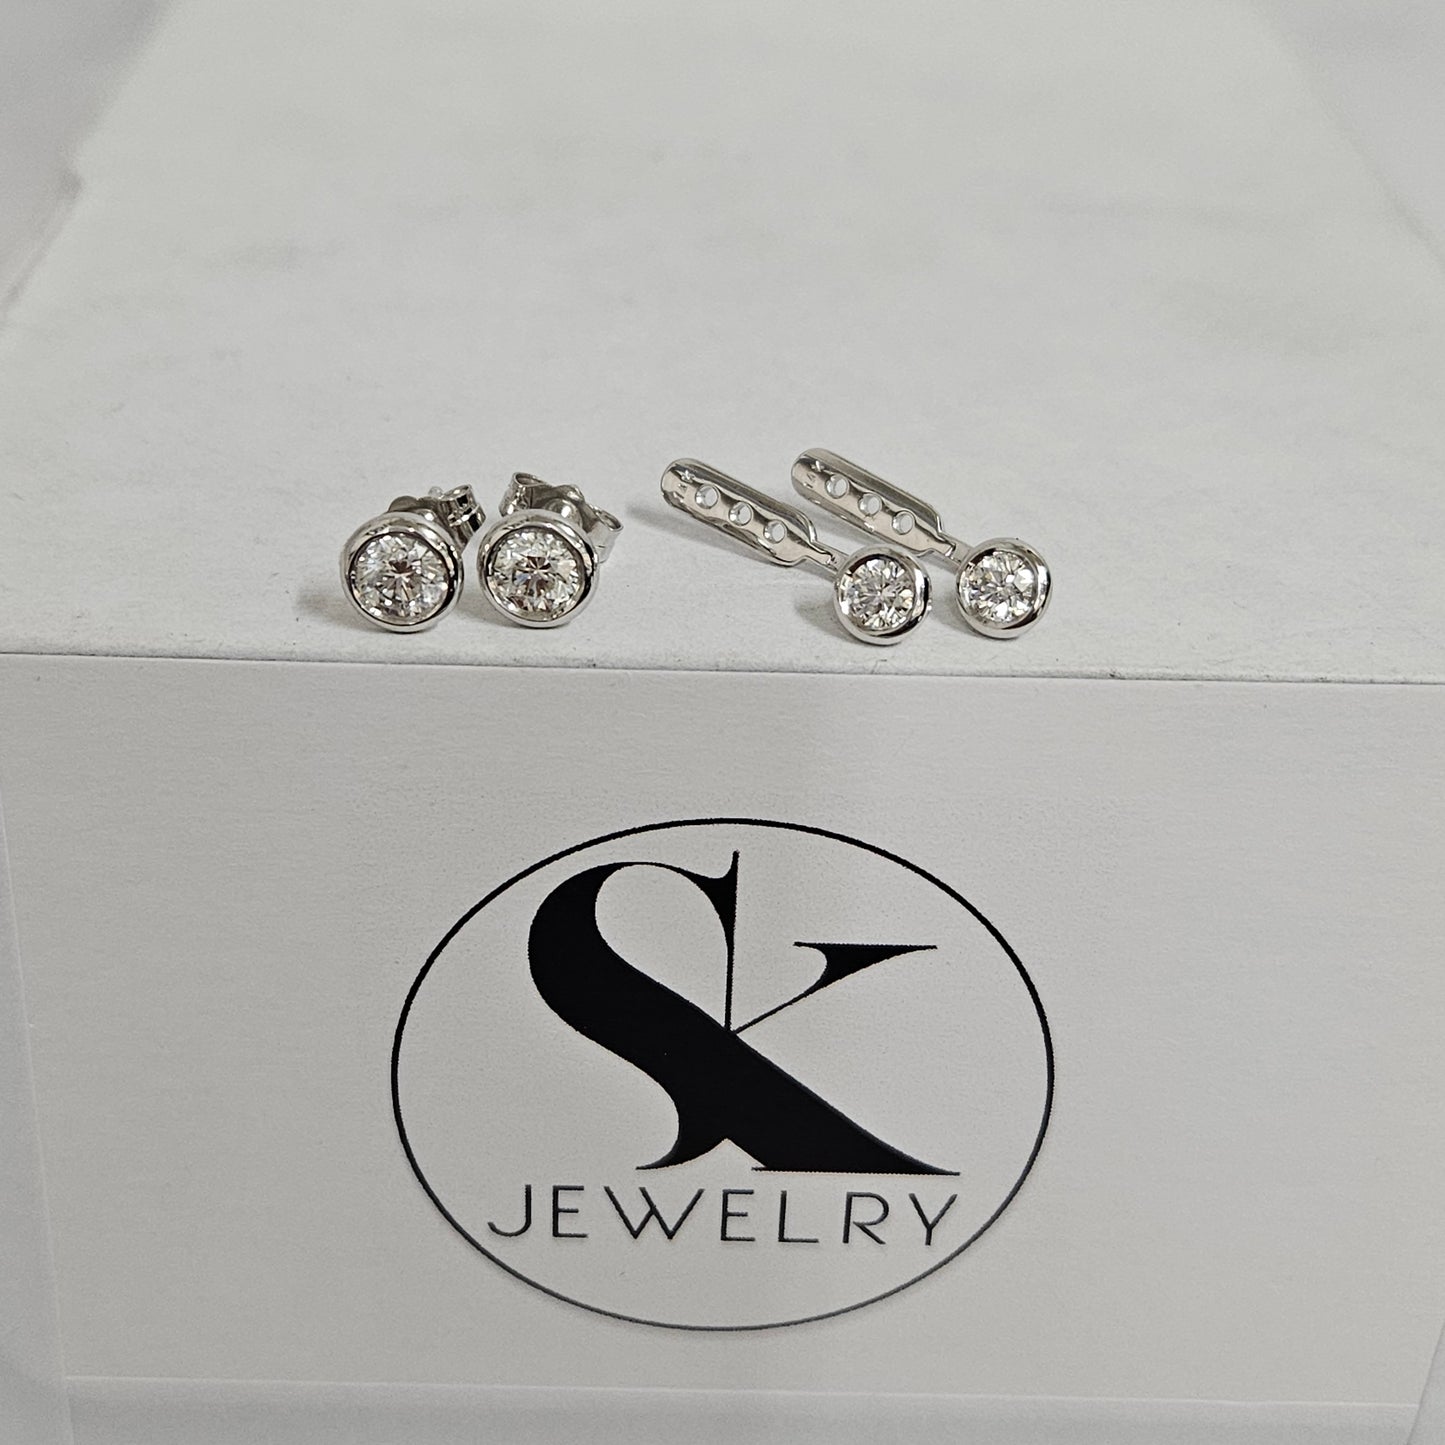 Diamond Bezel Set Stud Earrings/Diamond Earrings/Diamond Solitaire Earrings/Minimalist Diamond Stud/Bridesmaid Wedding Gift/Single or Pair